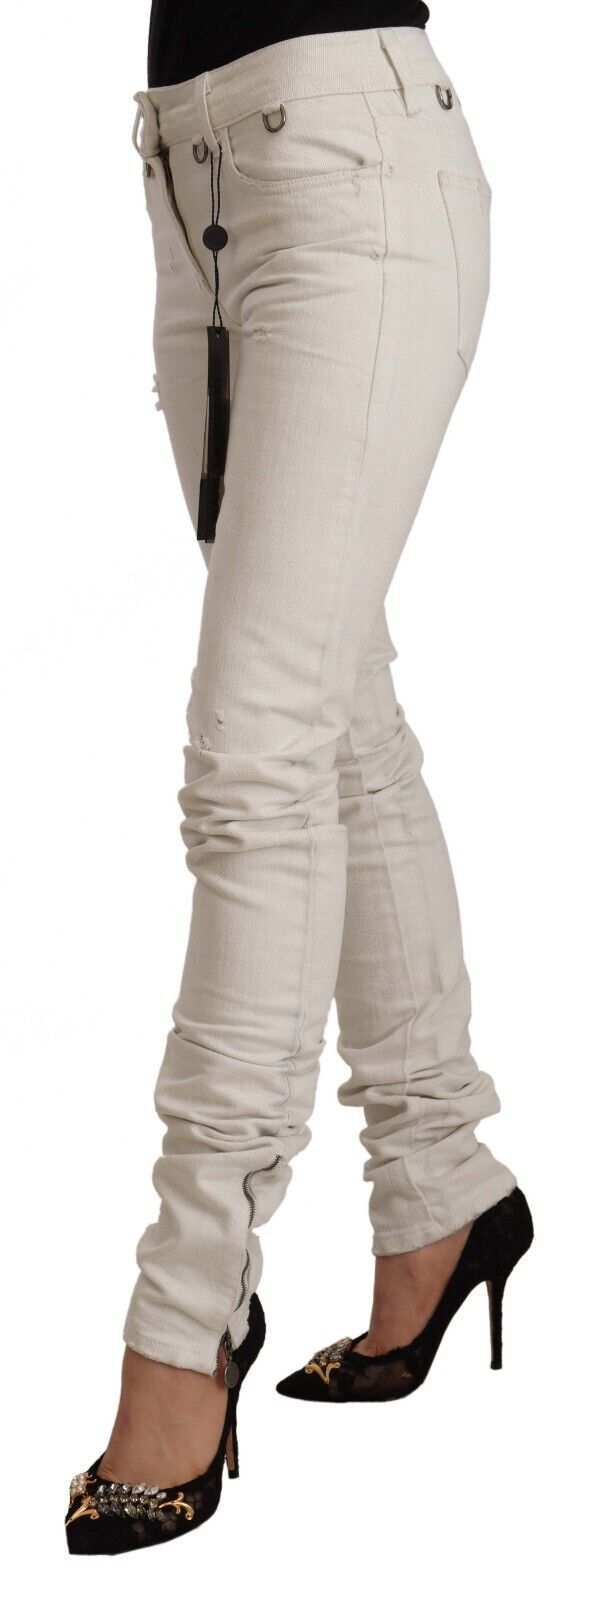 Karl Lagerfeld White Mid Waist Cotton Denim Slim Fit Women's Jeans